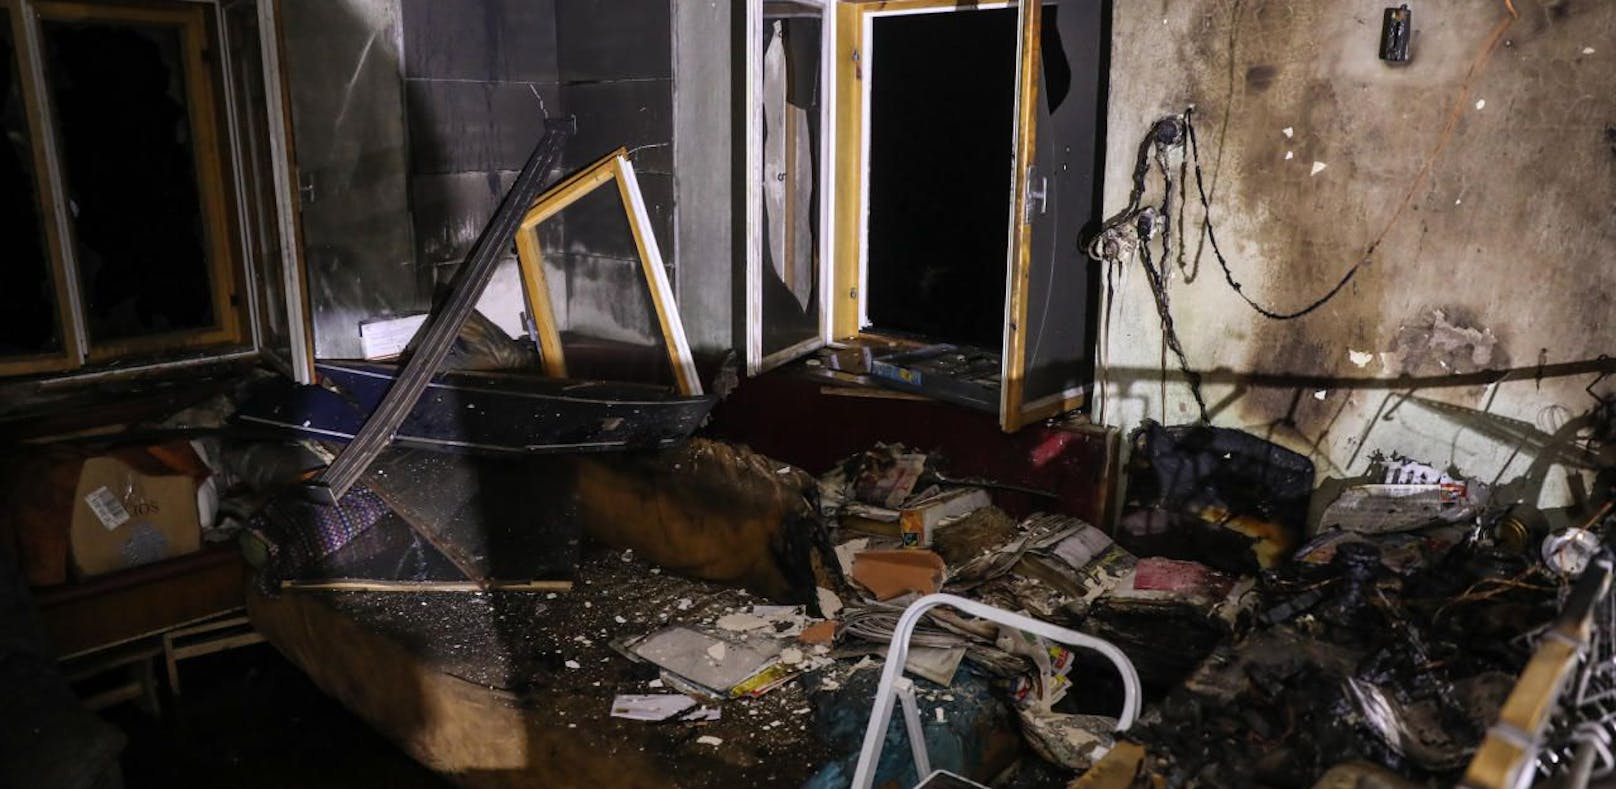 Das Zimmer ist komplett zerstört: Ein Fernseher war implodiert, die Feuerwehr rettete das ältere Ehepaar.